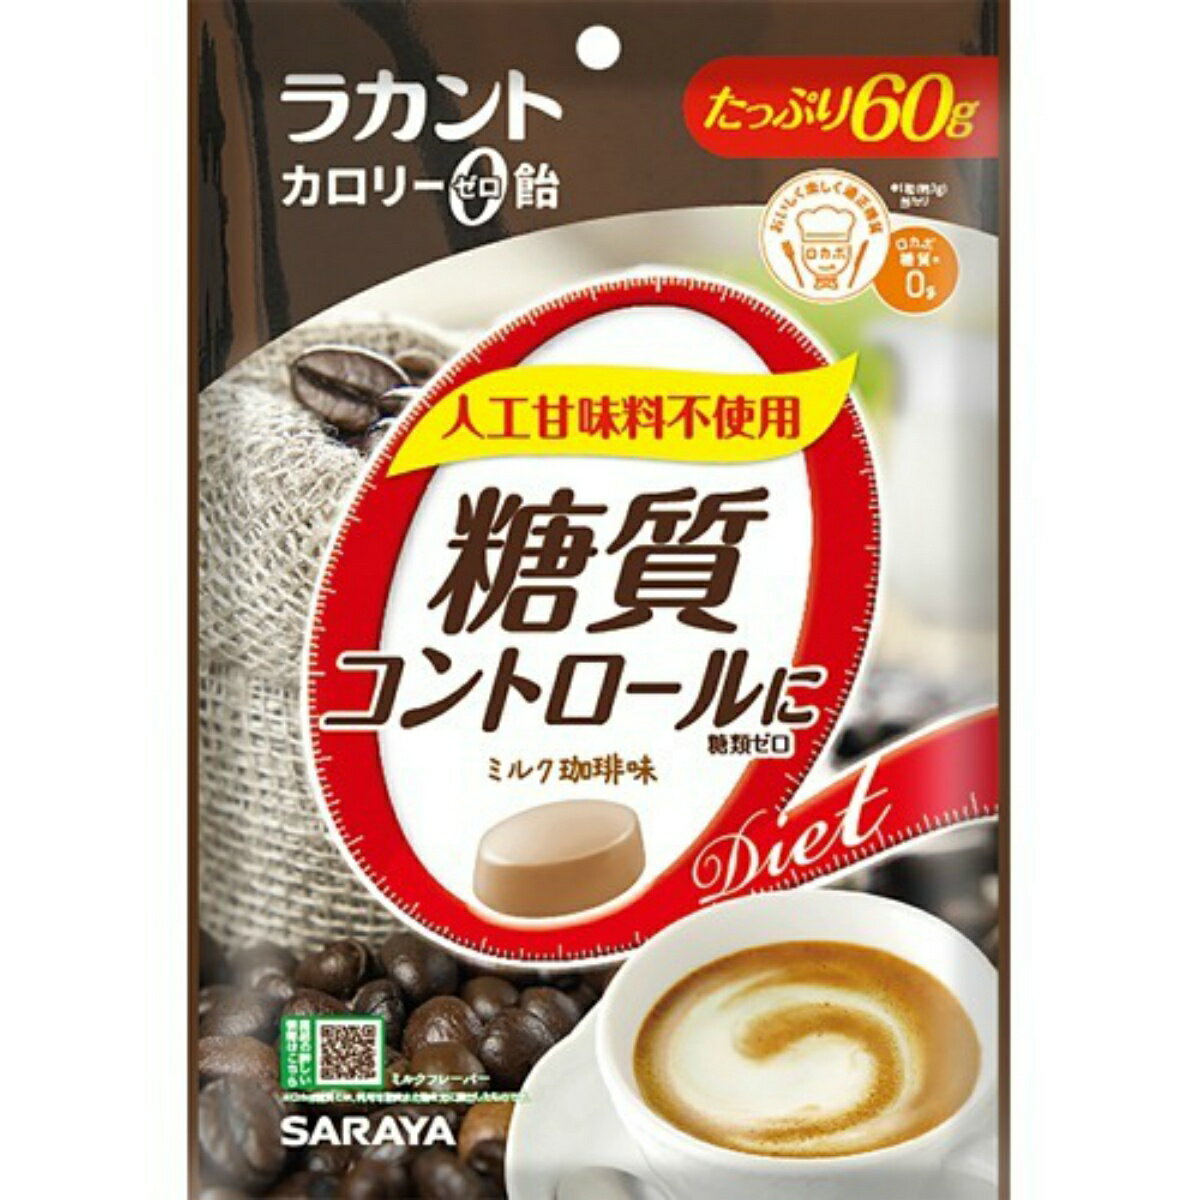 【メール便送料込】サラヤ ラカント カロリーゼロ飴 ミルク珈琲味 60g